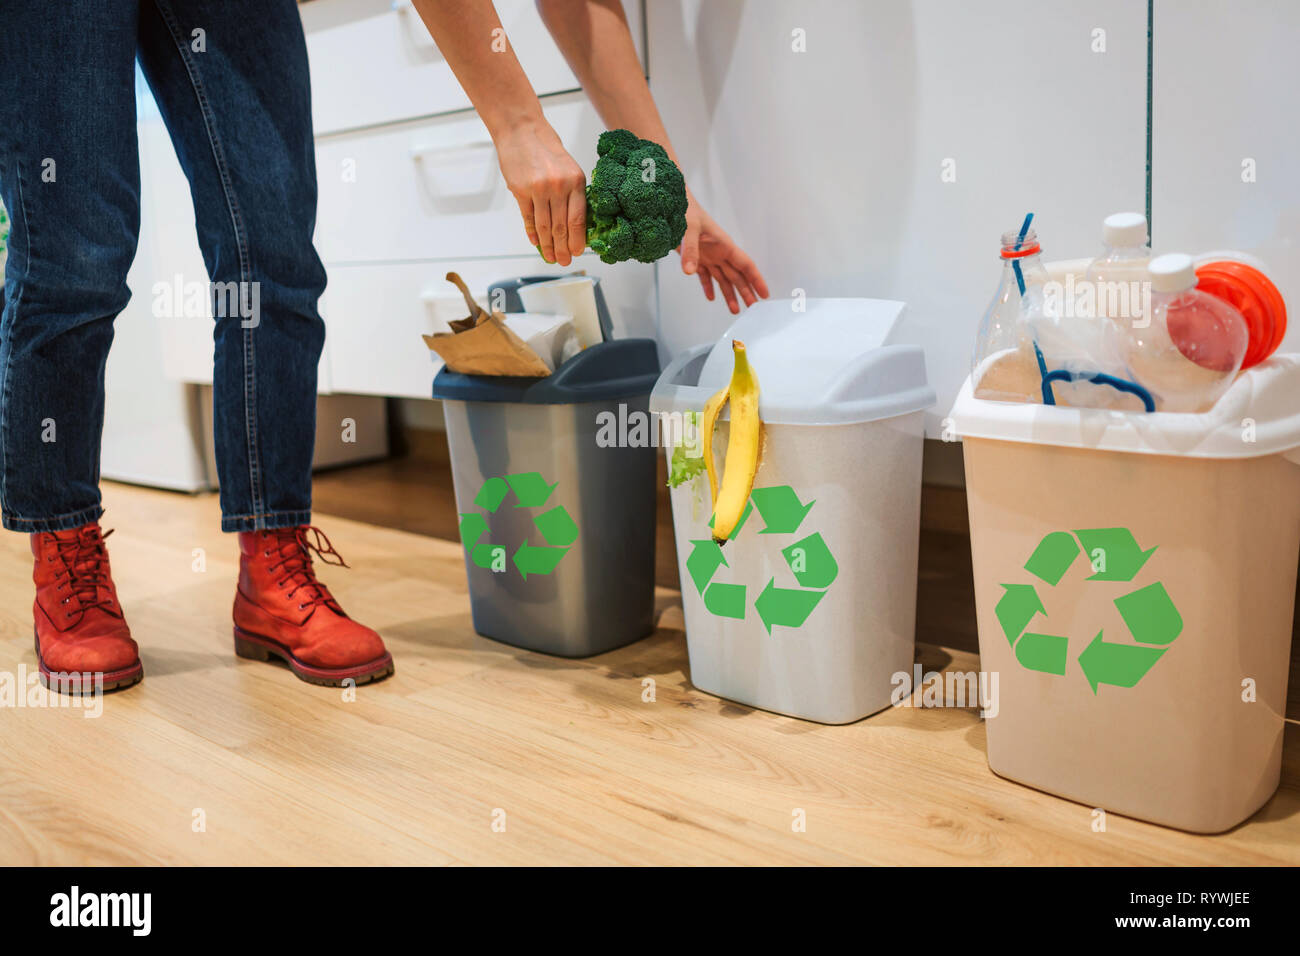 Mülltrennung zu Hause. 7/8-Ansicht von Frau, Brokkoli in der Mülltonne. Bunte  Mülleimer für die Sortierung der Abfälle in der Küche Stockfotografie -  Alamy